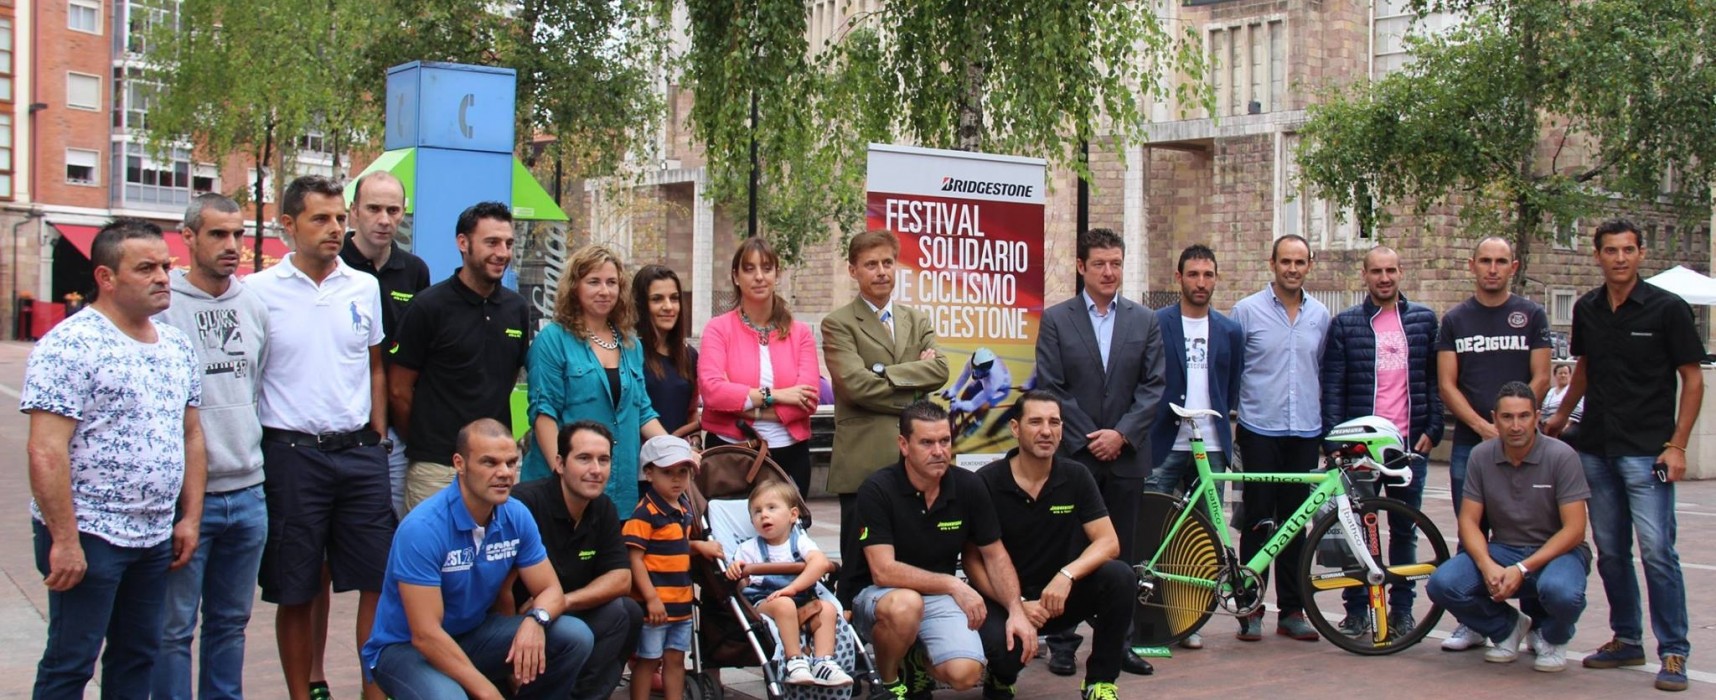 Bridgestone organiza una prueba ciclista solidaria a favor de cuatro niños que padecen enfermedades raras